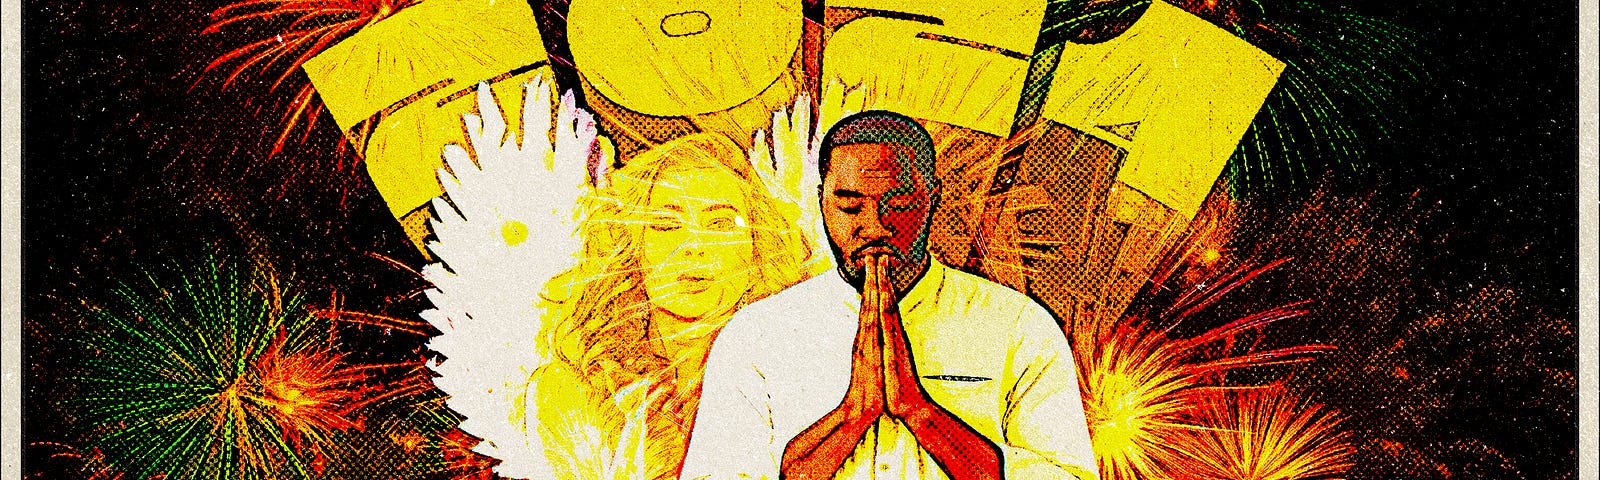 Man praying at New YEar’s